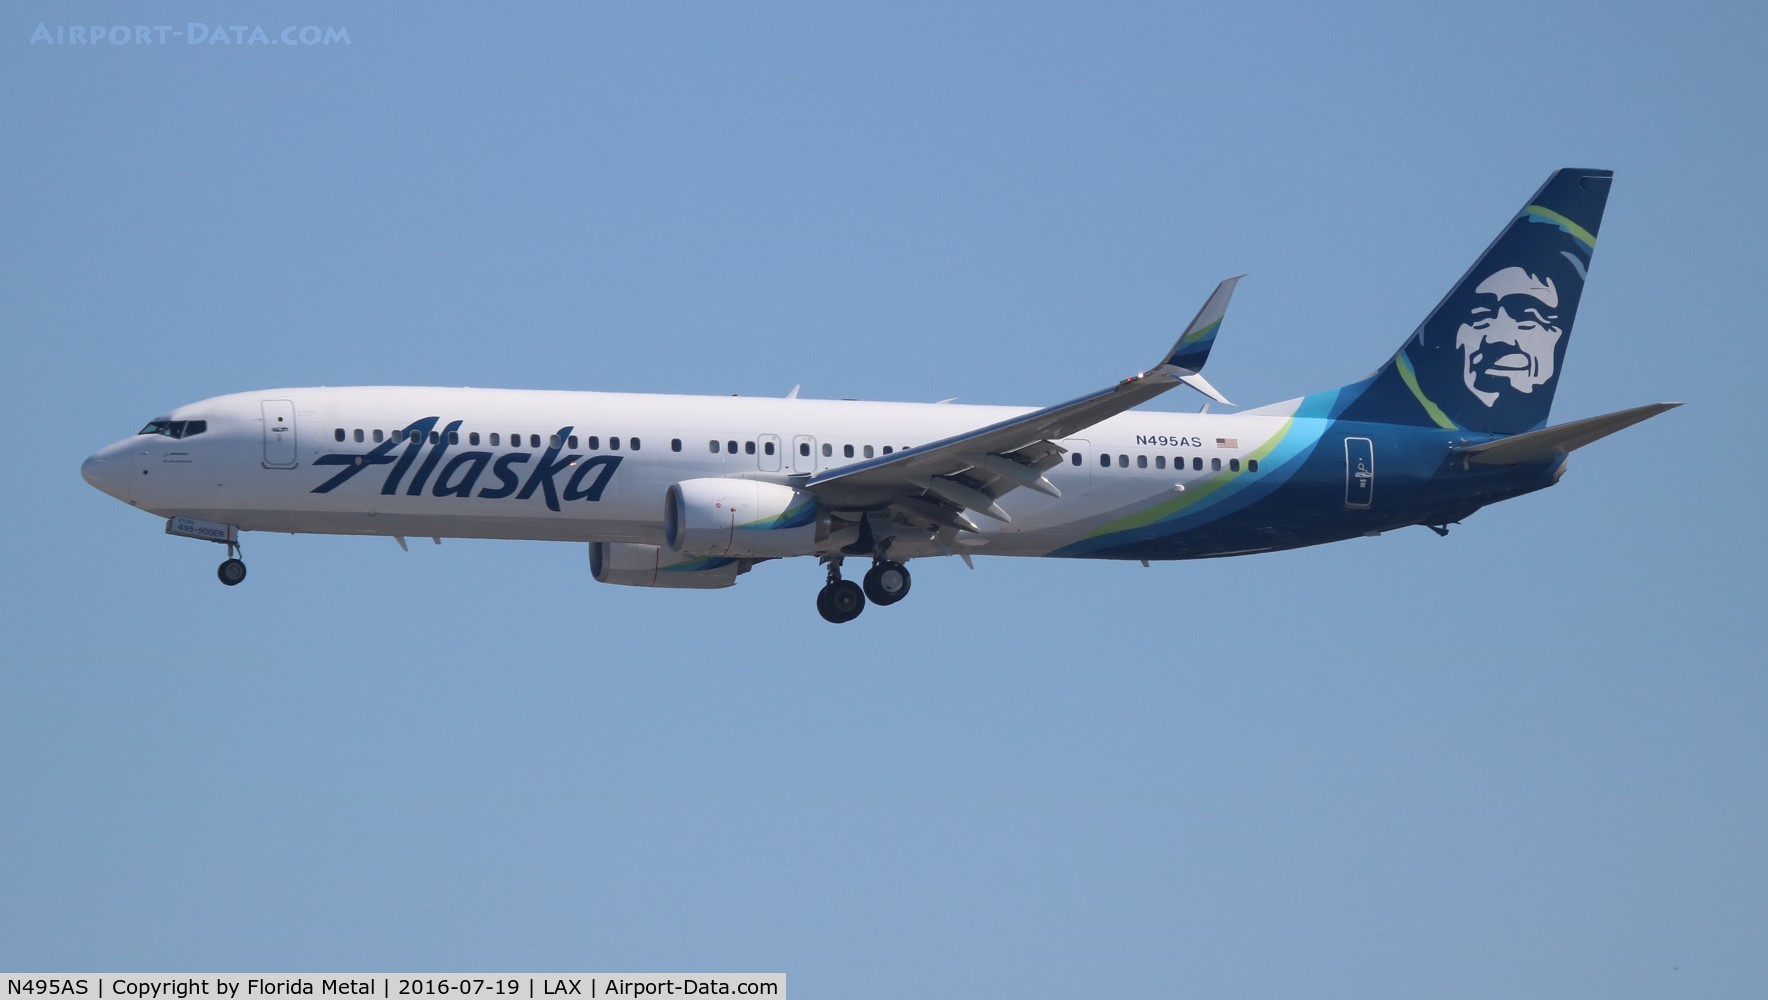 N495AS, 2016 Boeing 737-900/ER C/N 41728, Alaska